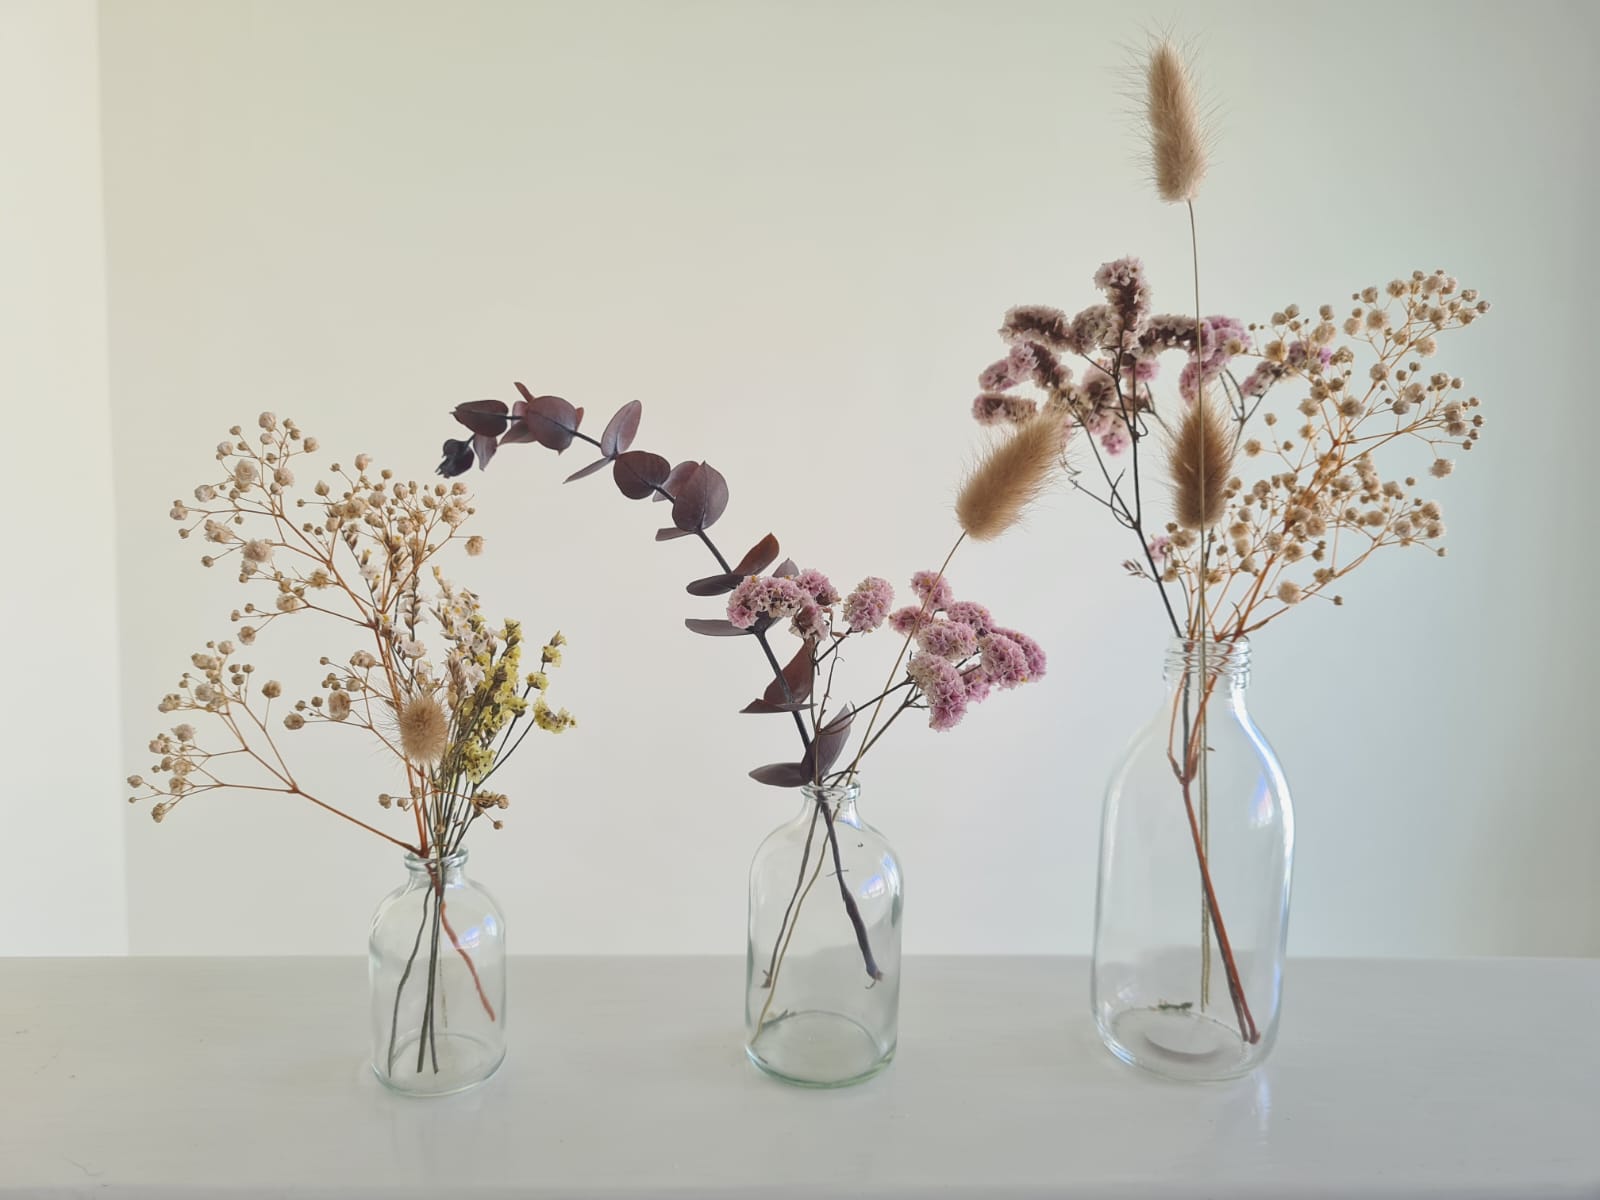 עיצוב פרחים לאירוע או למסעדה באמצעות זרי פרחים יבשים – פתרון מושלם בעלות נמוכה